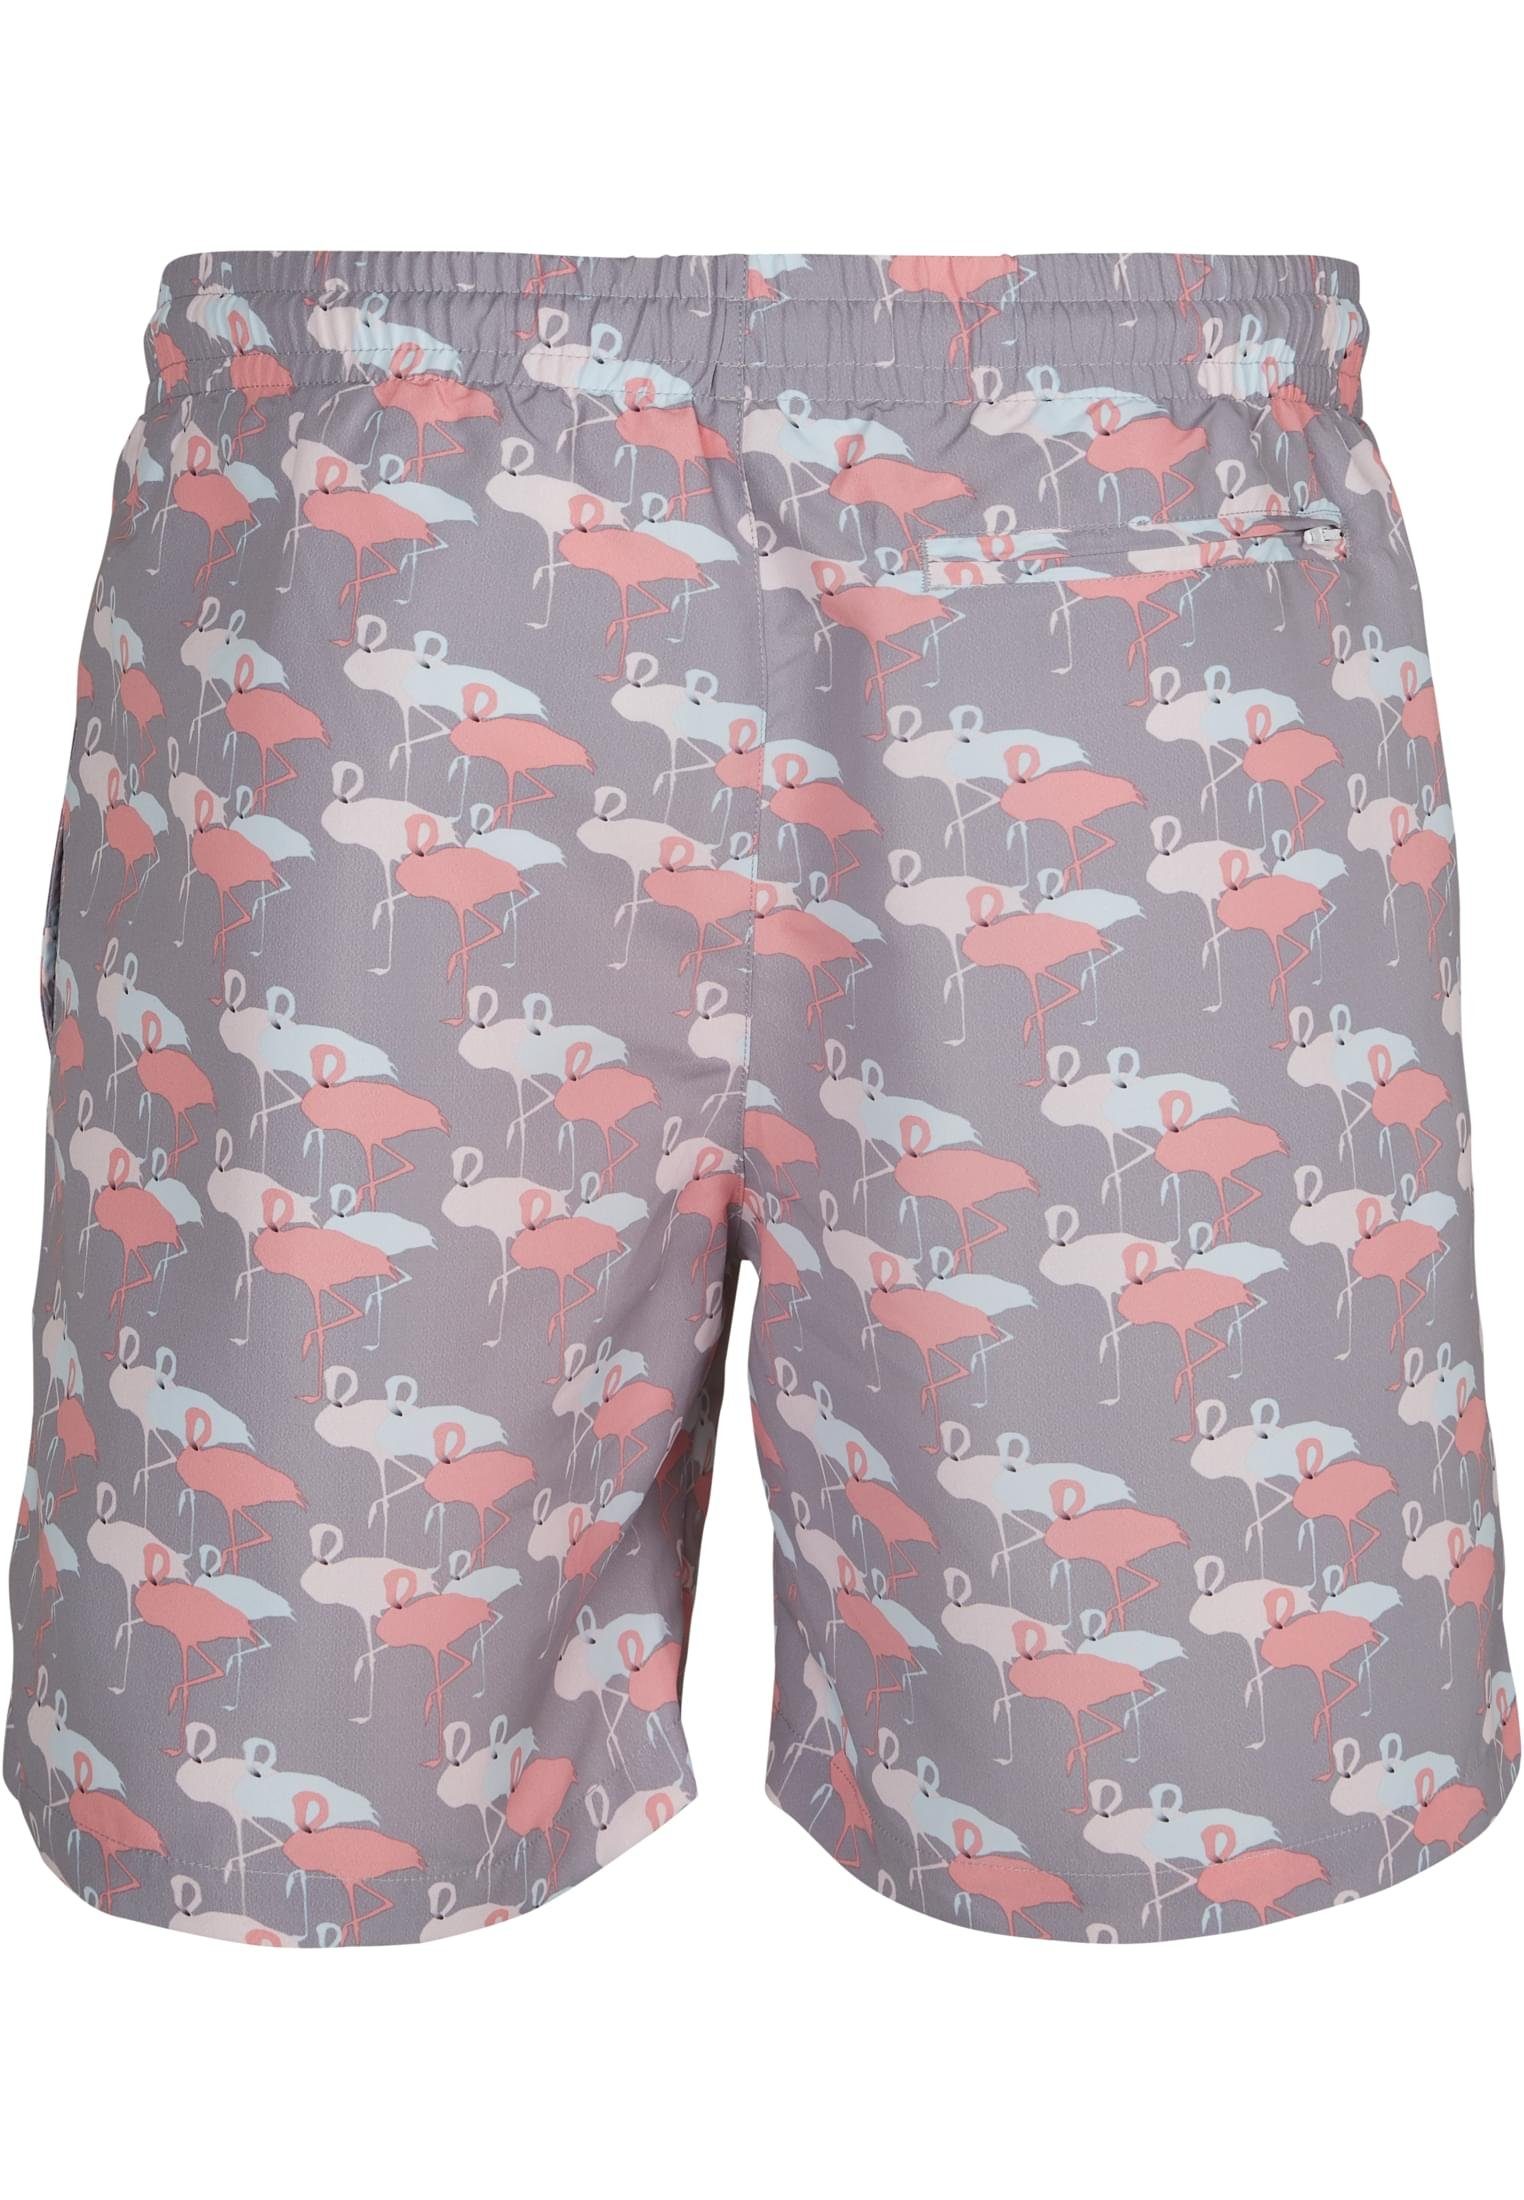 URBAN CLASSICS aop Swim Herren Pattern flamingo Badeshorts Shorts